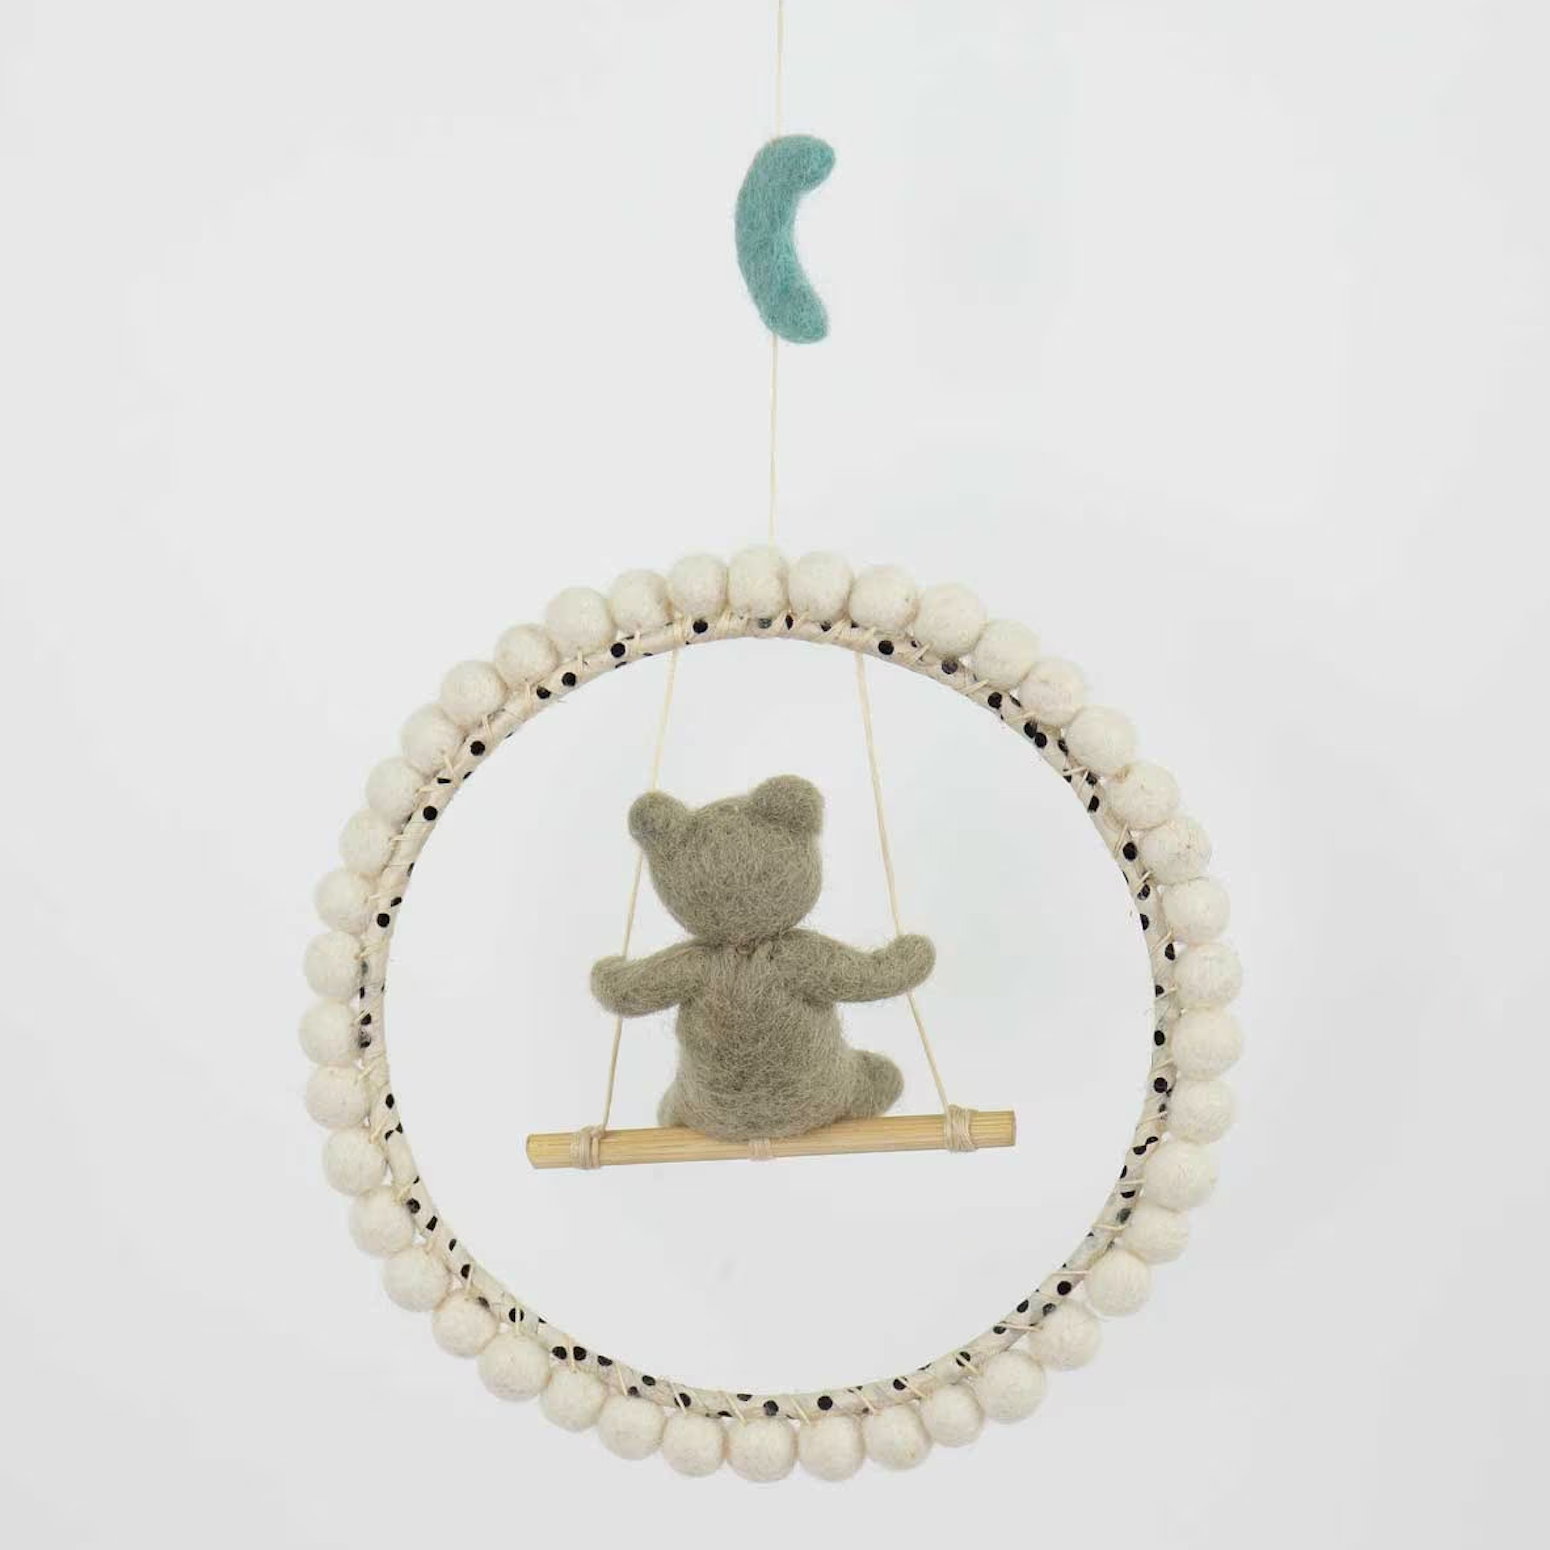 Mobile, He Swings, Bear on Swing, Handmade in wool, 18cm - in giftbox